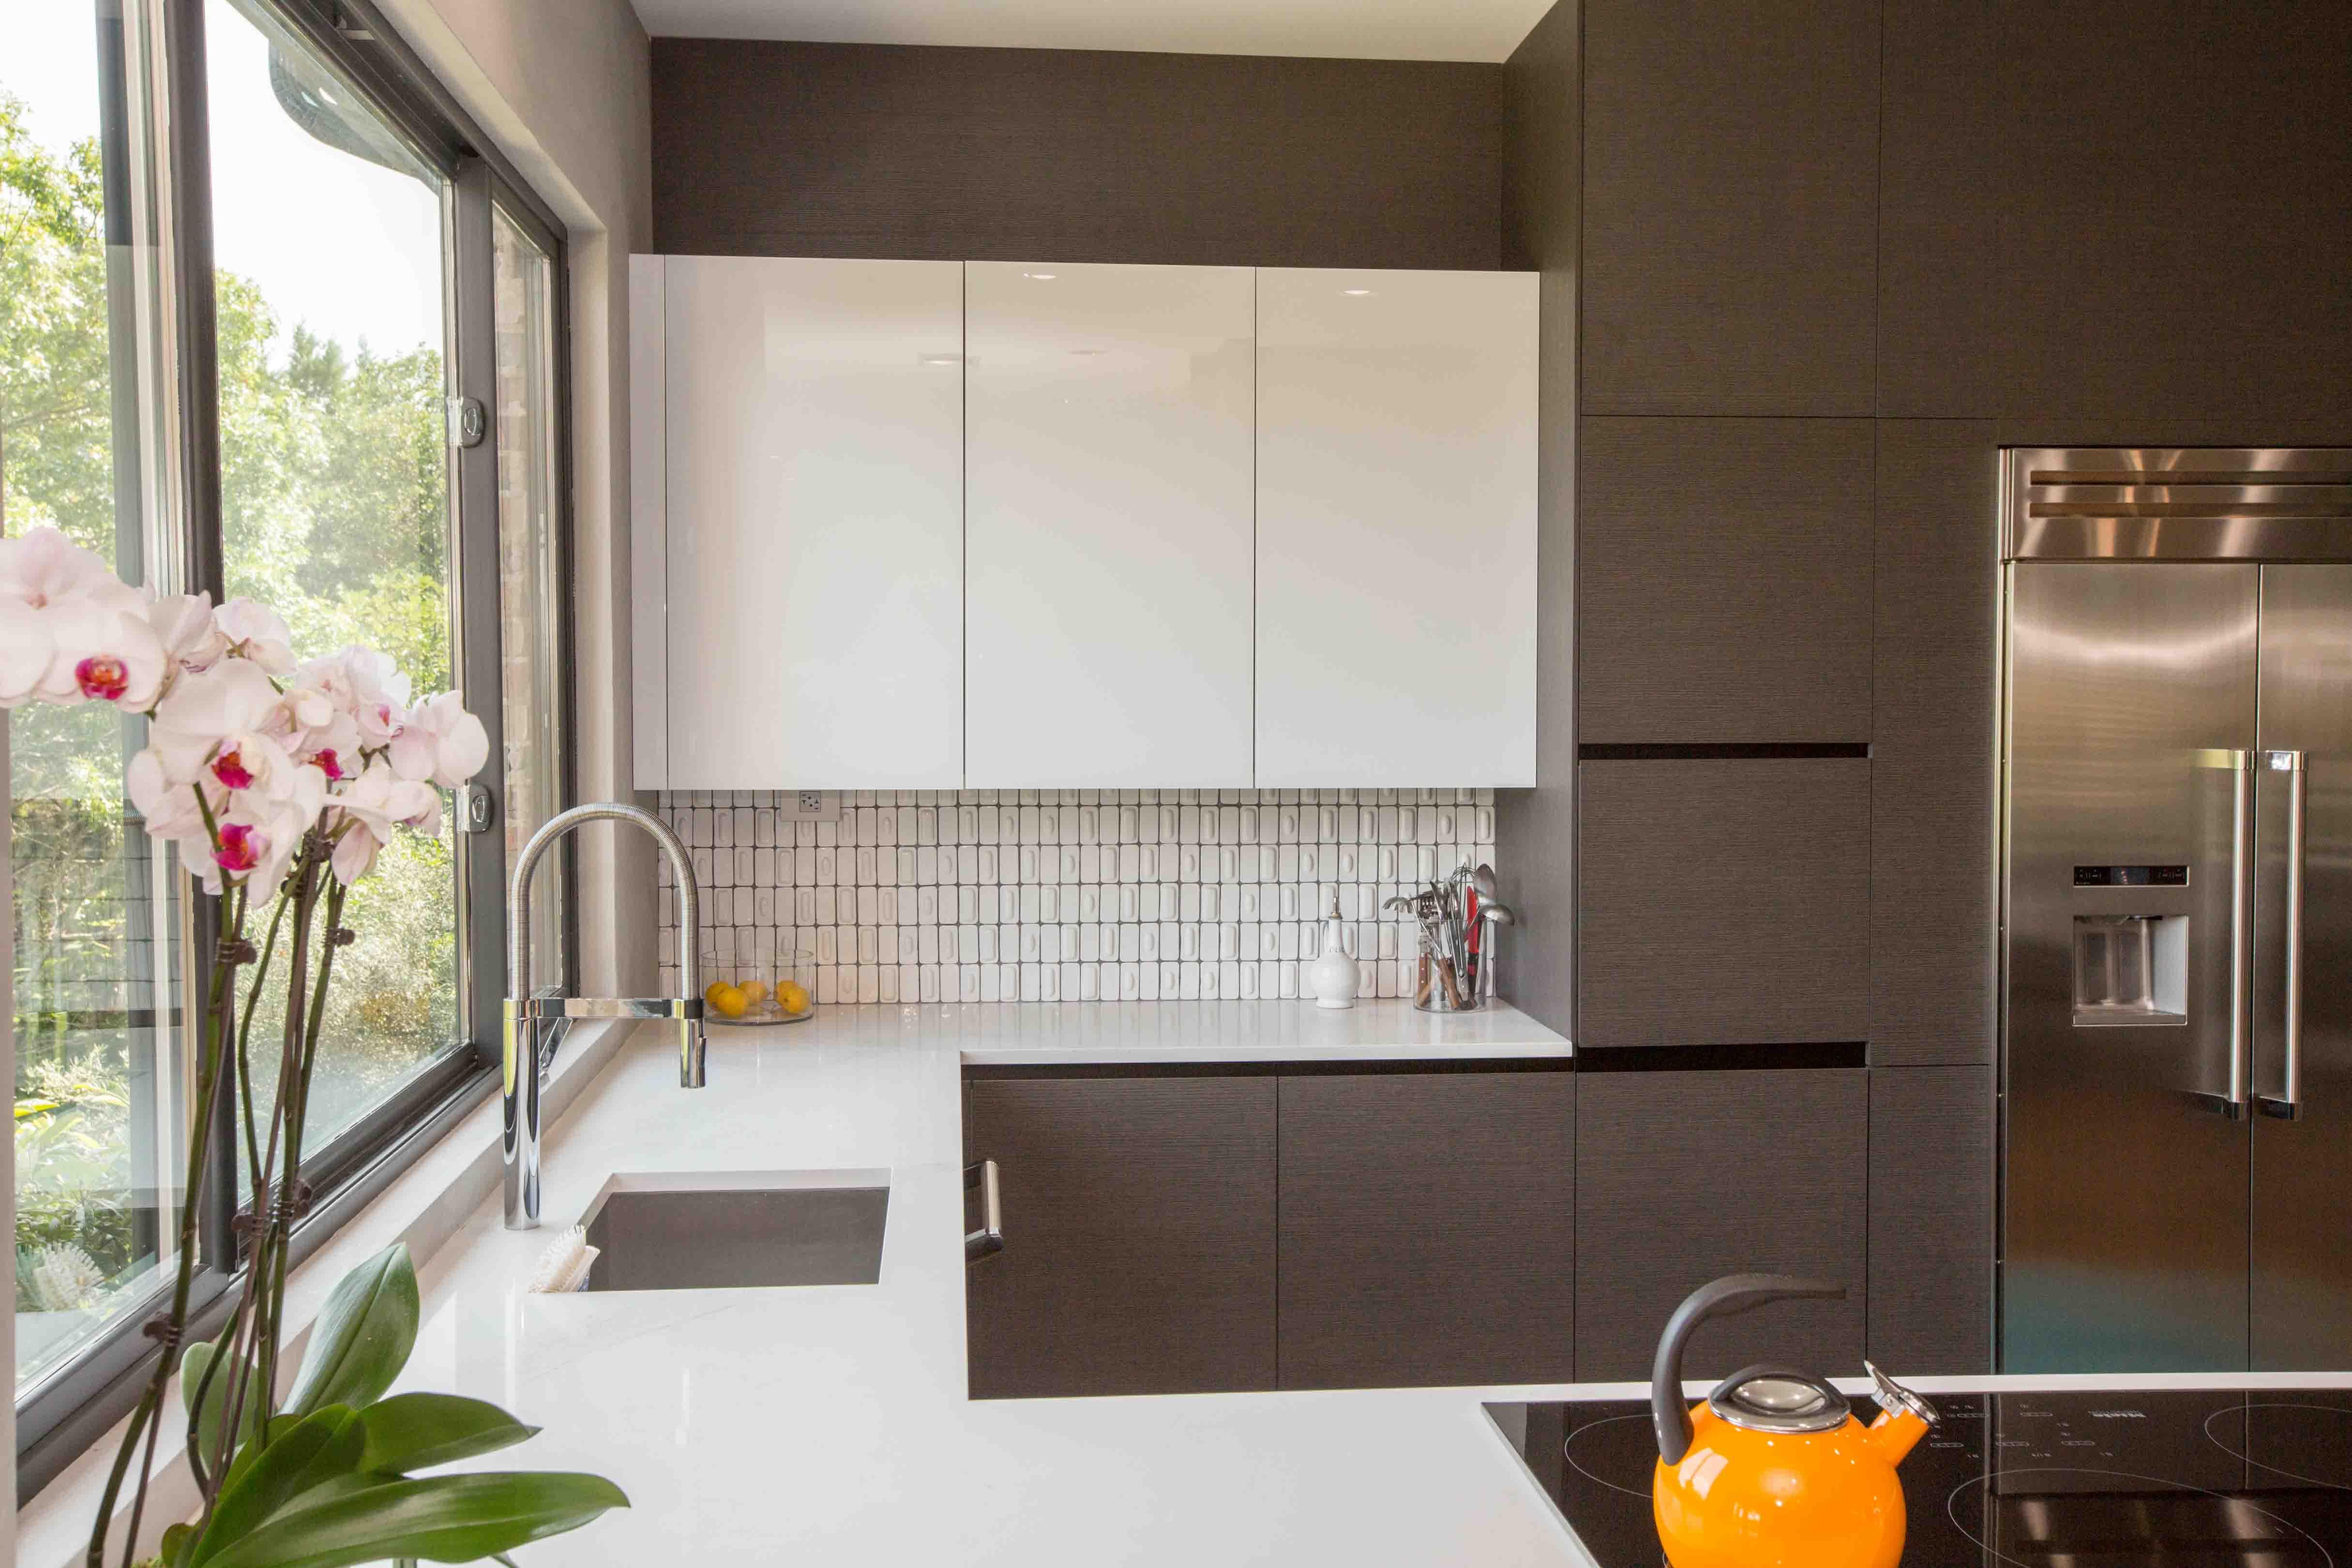 Handless kitchen cabinet design by Spazio Interni